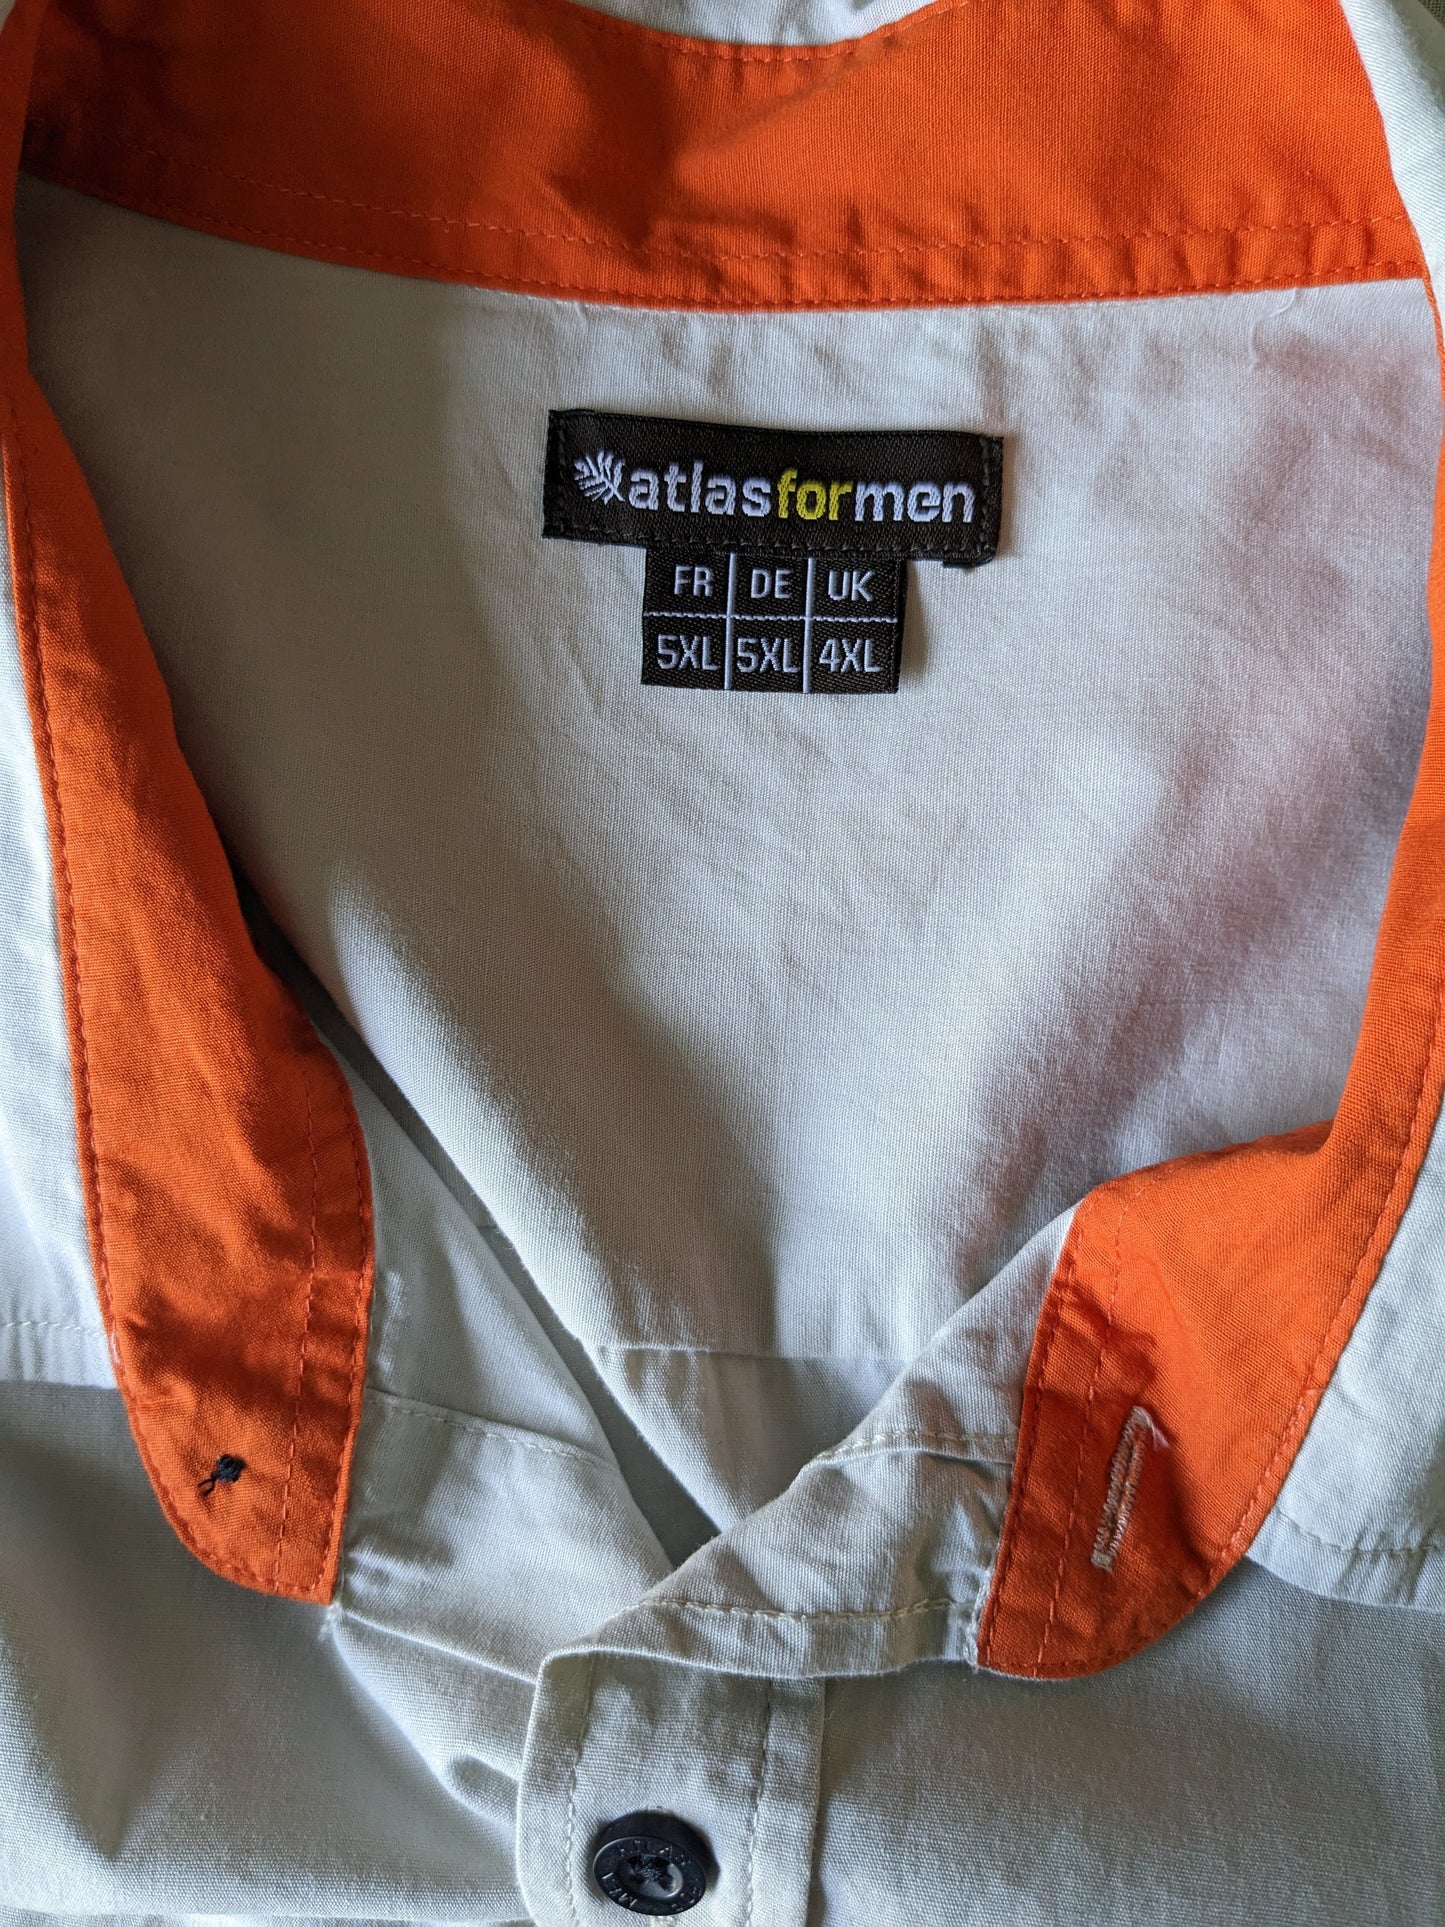 Atlas for Men overhemd korte mouw. Beige gekleurd. Oranje accenten. Maat 5XL / XXXXXL.